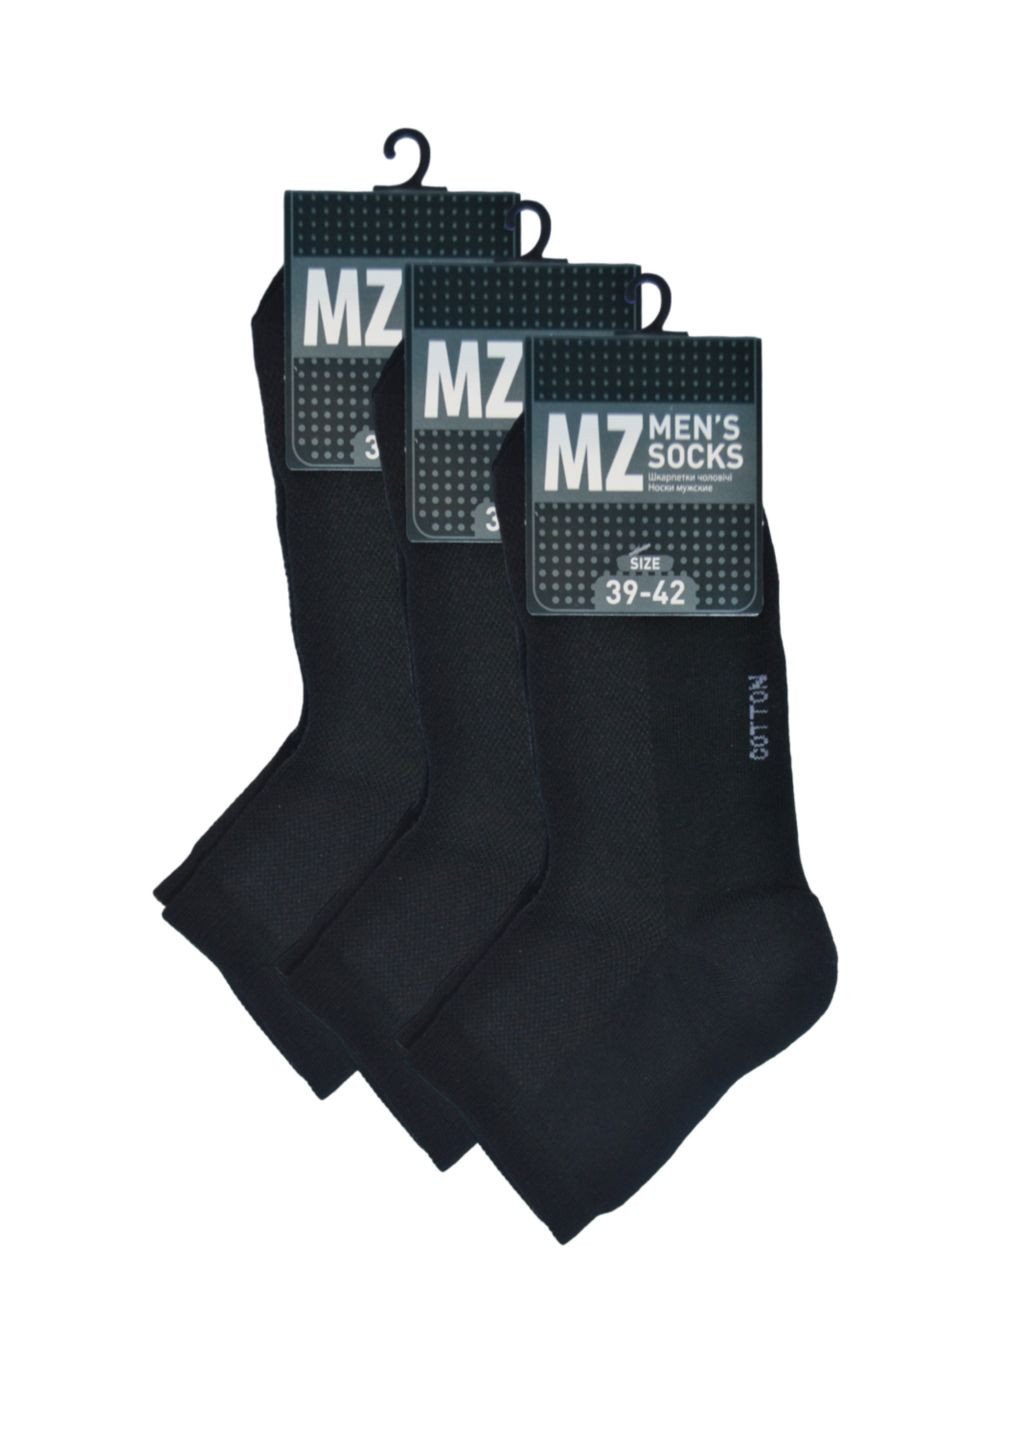 RFT Шкарпетки чол.сер./сітка/RT1111-005/39-42/білий. Набір (3 шт.) MZ rt1111-005_набори (260063182)